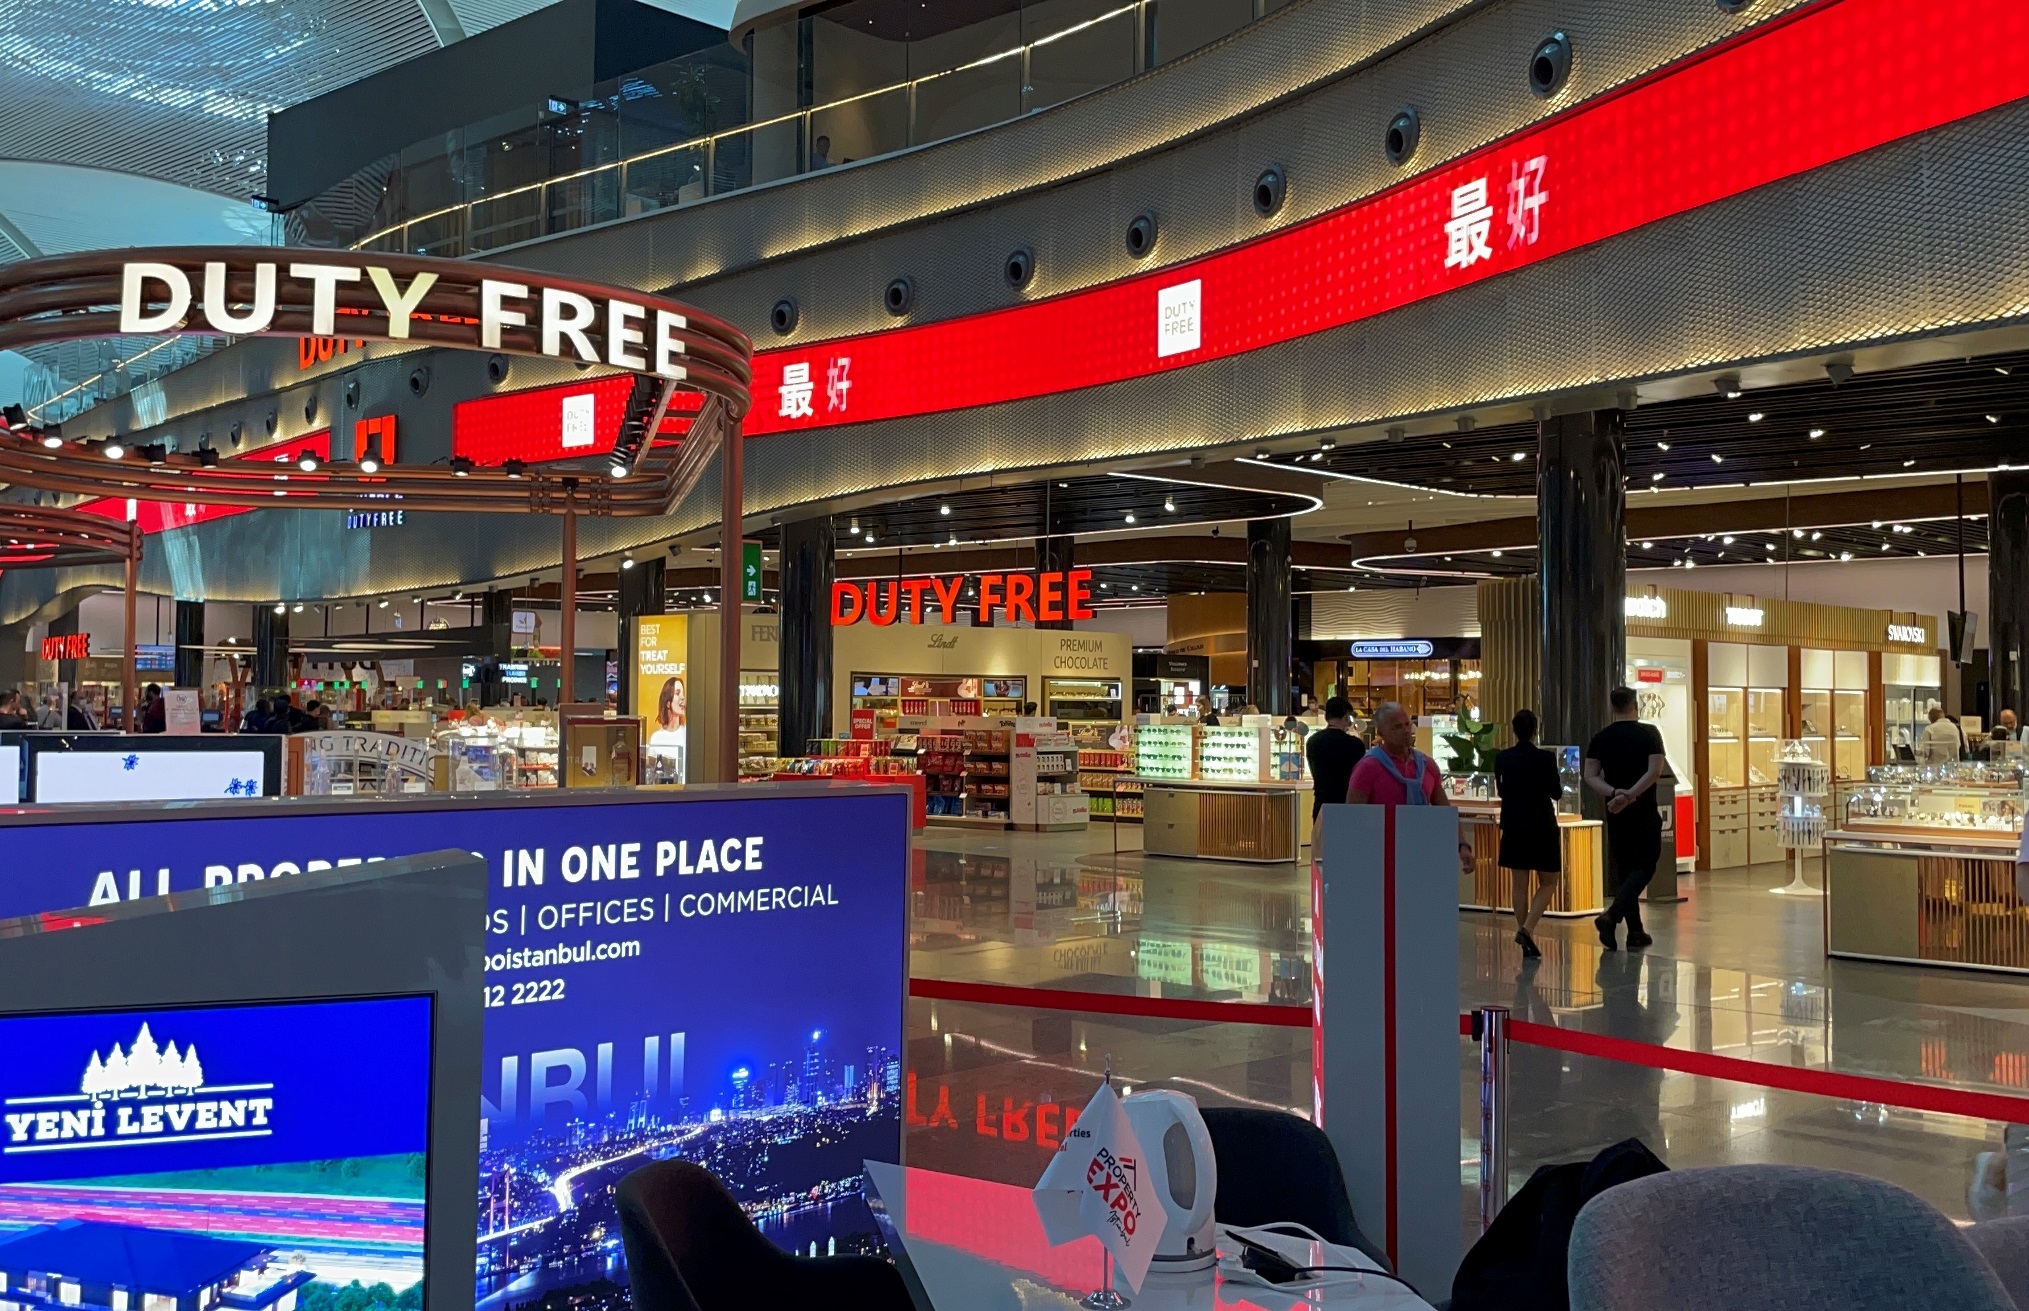 İstanbul İGA Havalimanı - Duty-free